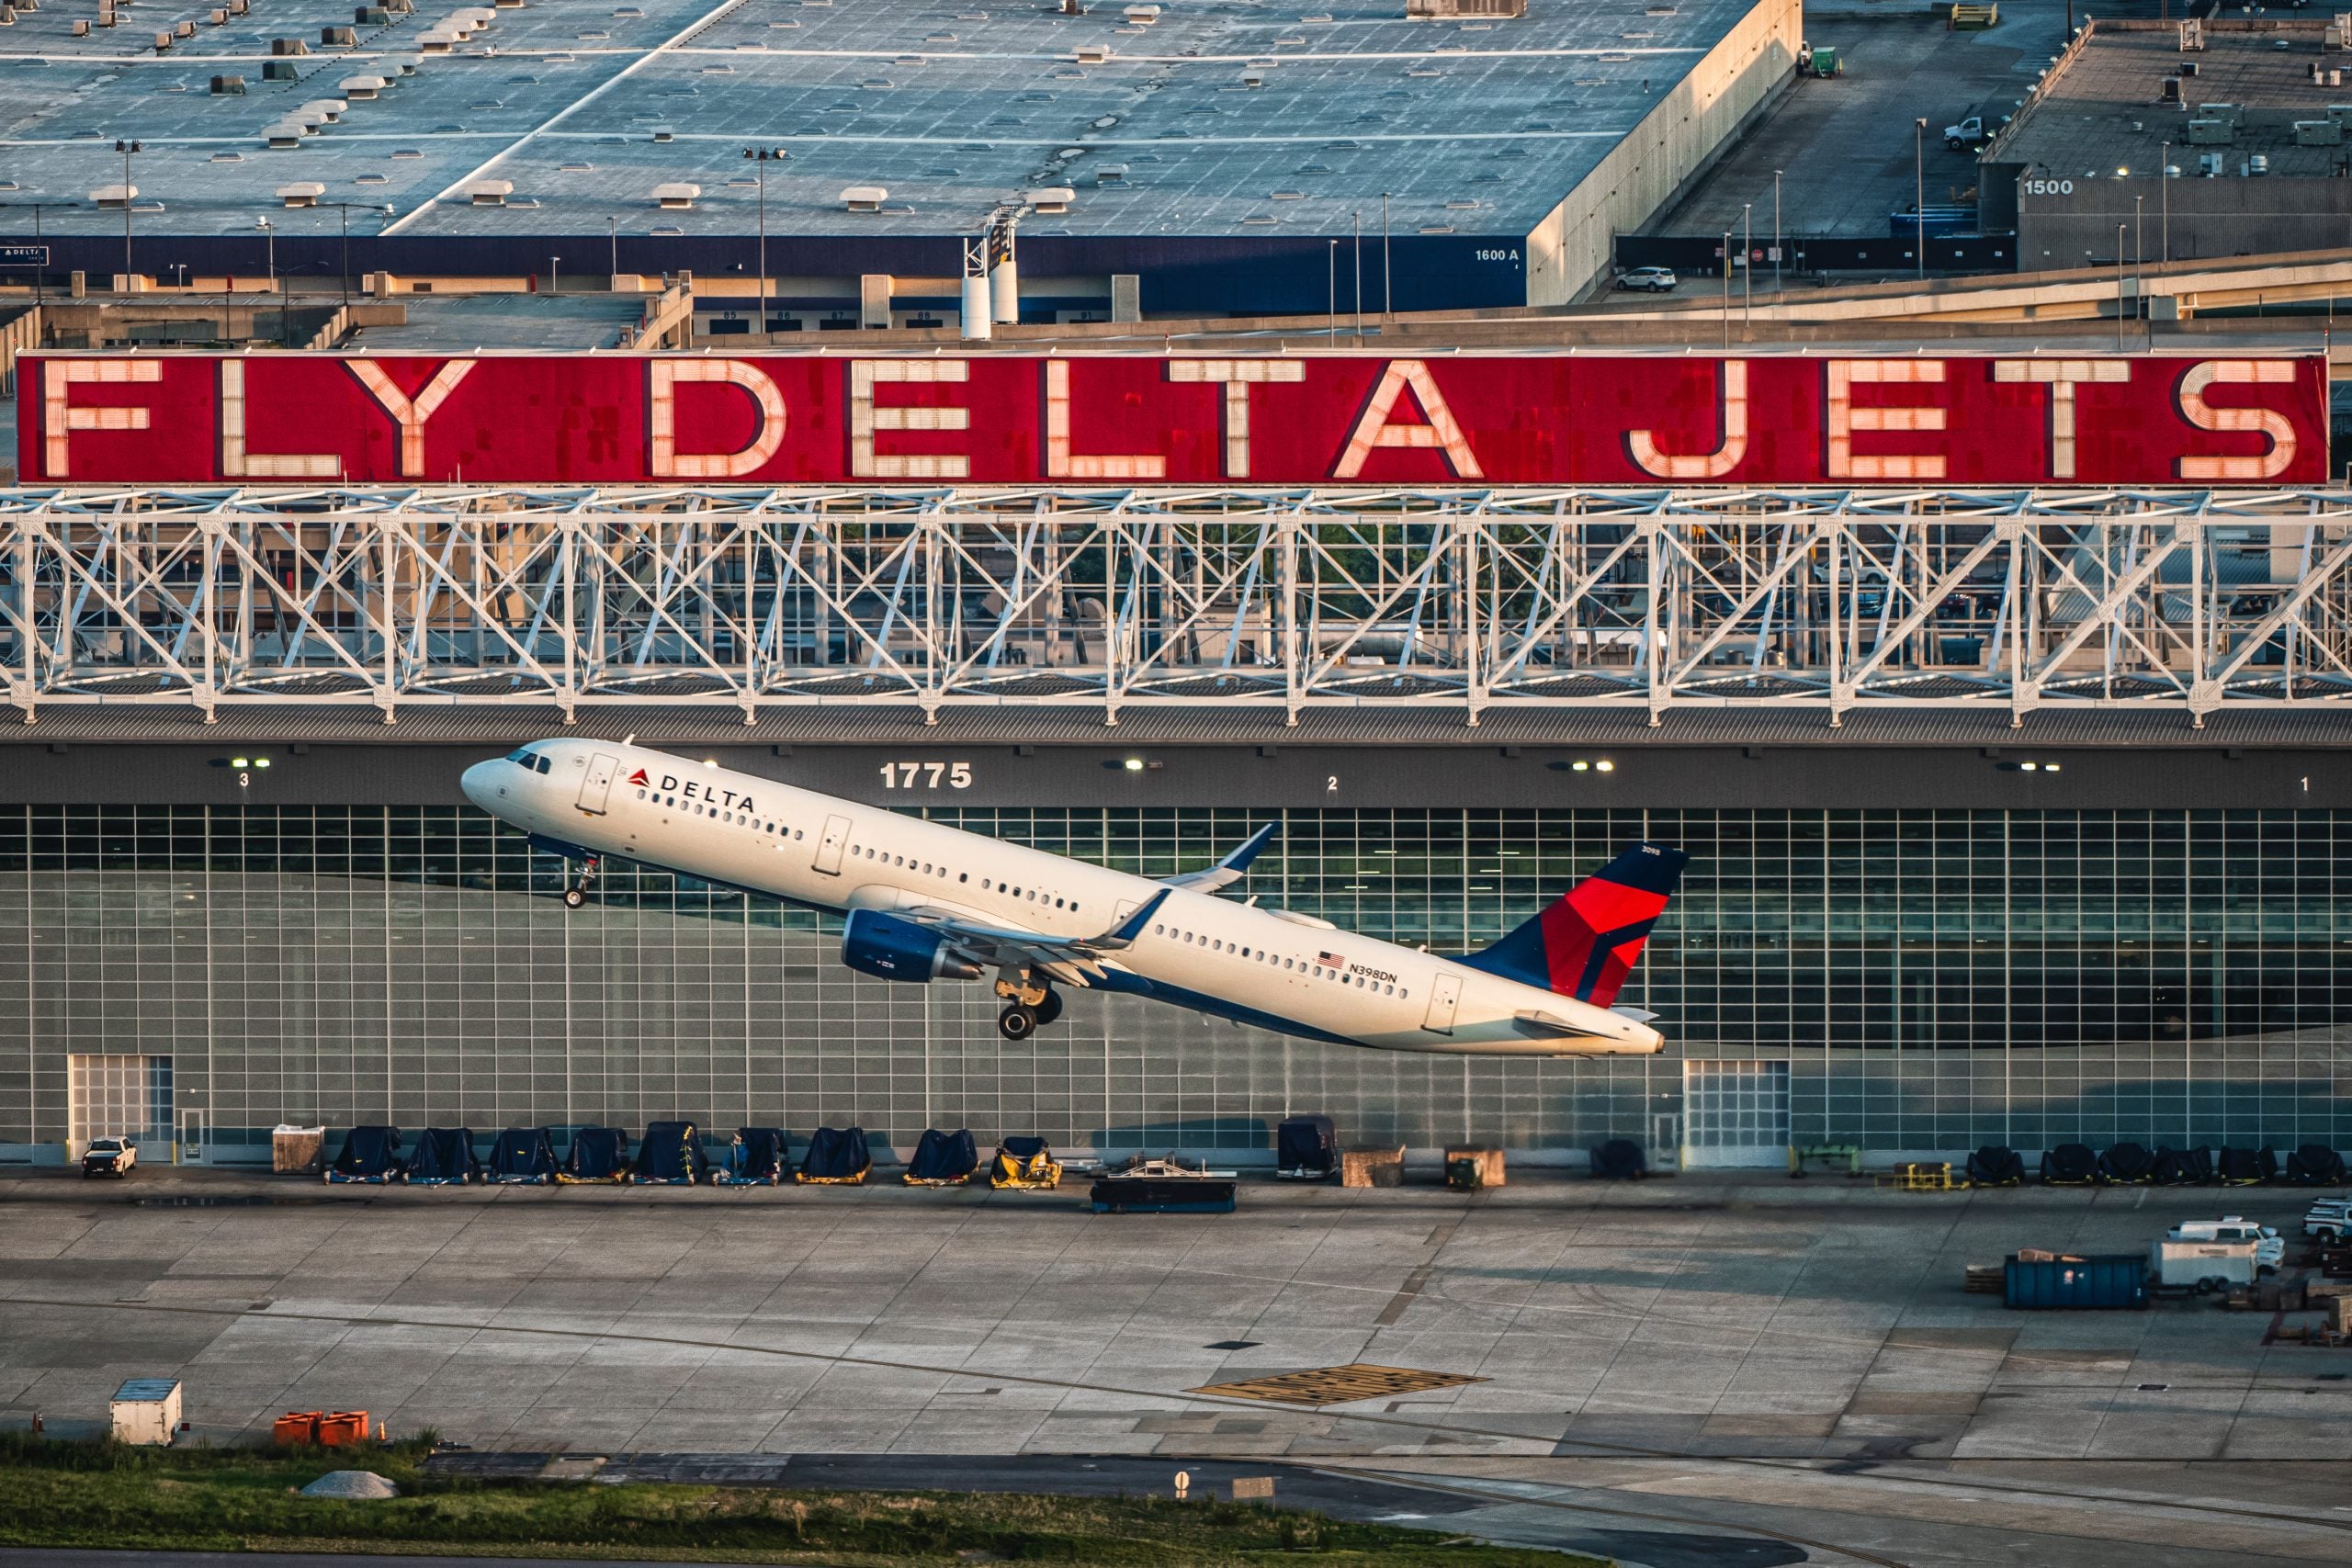 Delta A321 Takeoff Atlanta Fly Delta Jets